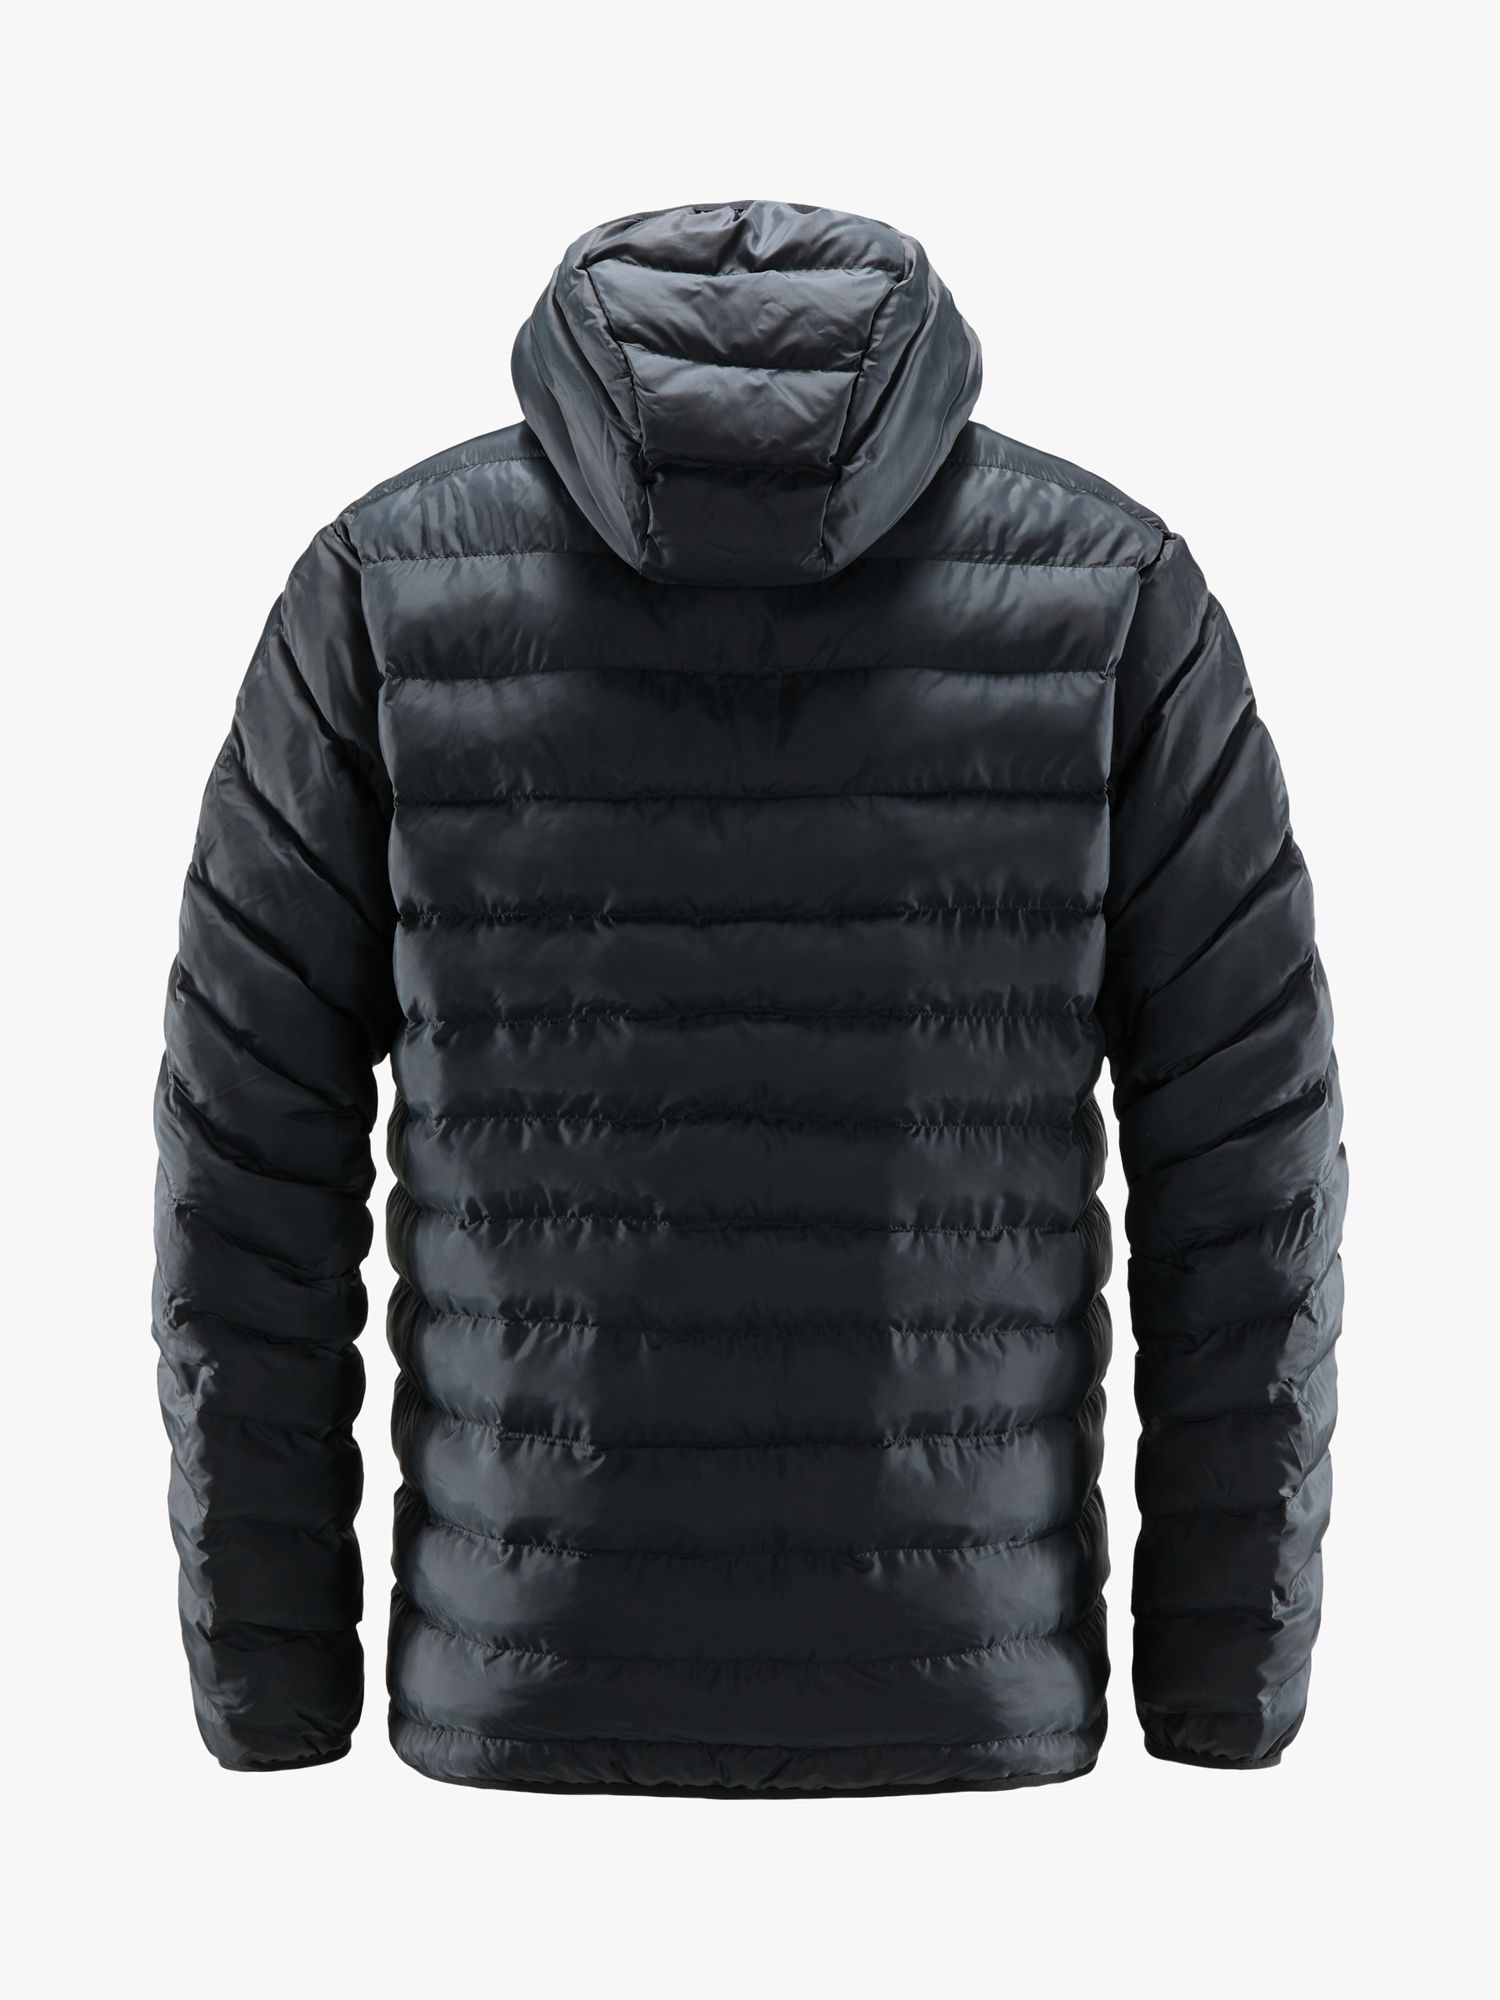 Haglöfs Särna Mimic Hood Men's Insulated Jacket, True Black, S